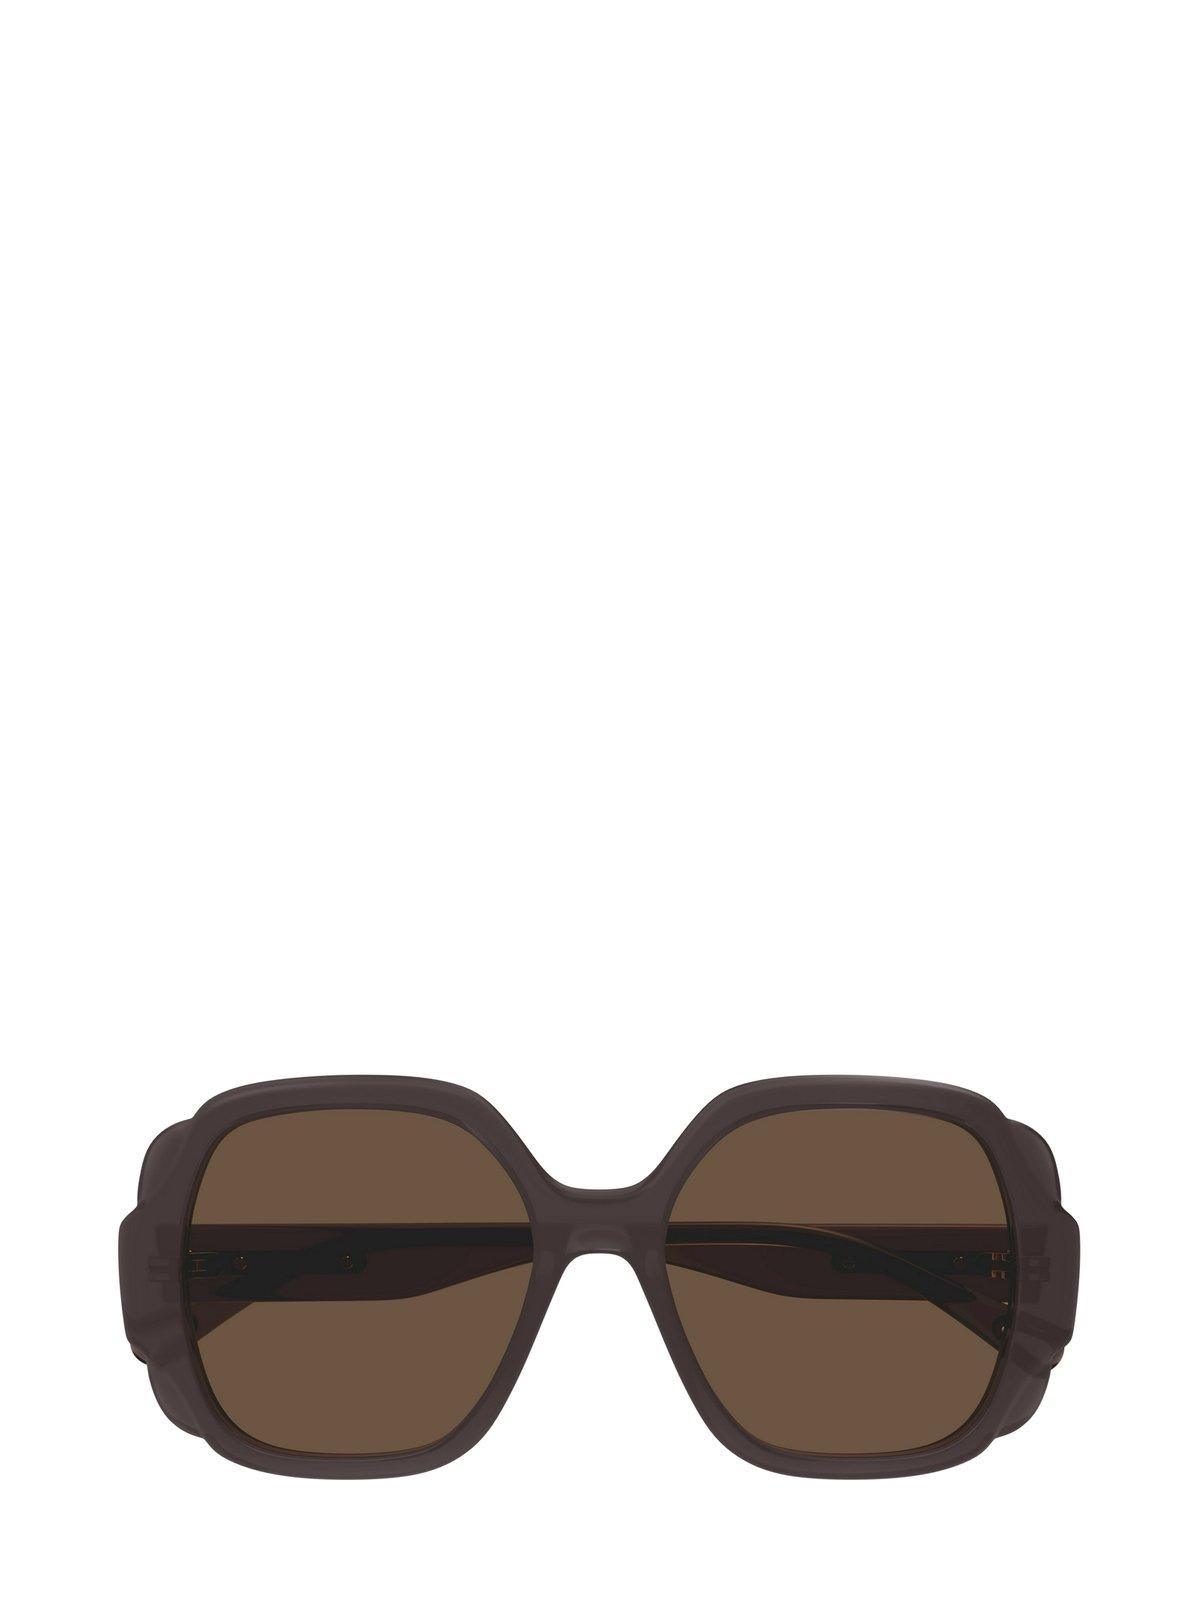 Chloé Square Frame Sunglasses In Black